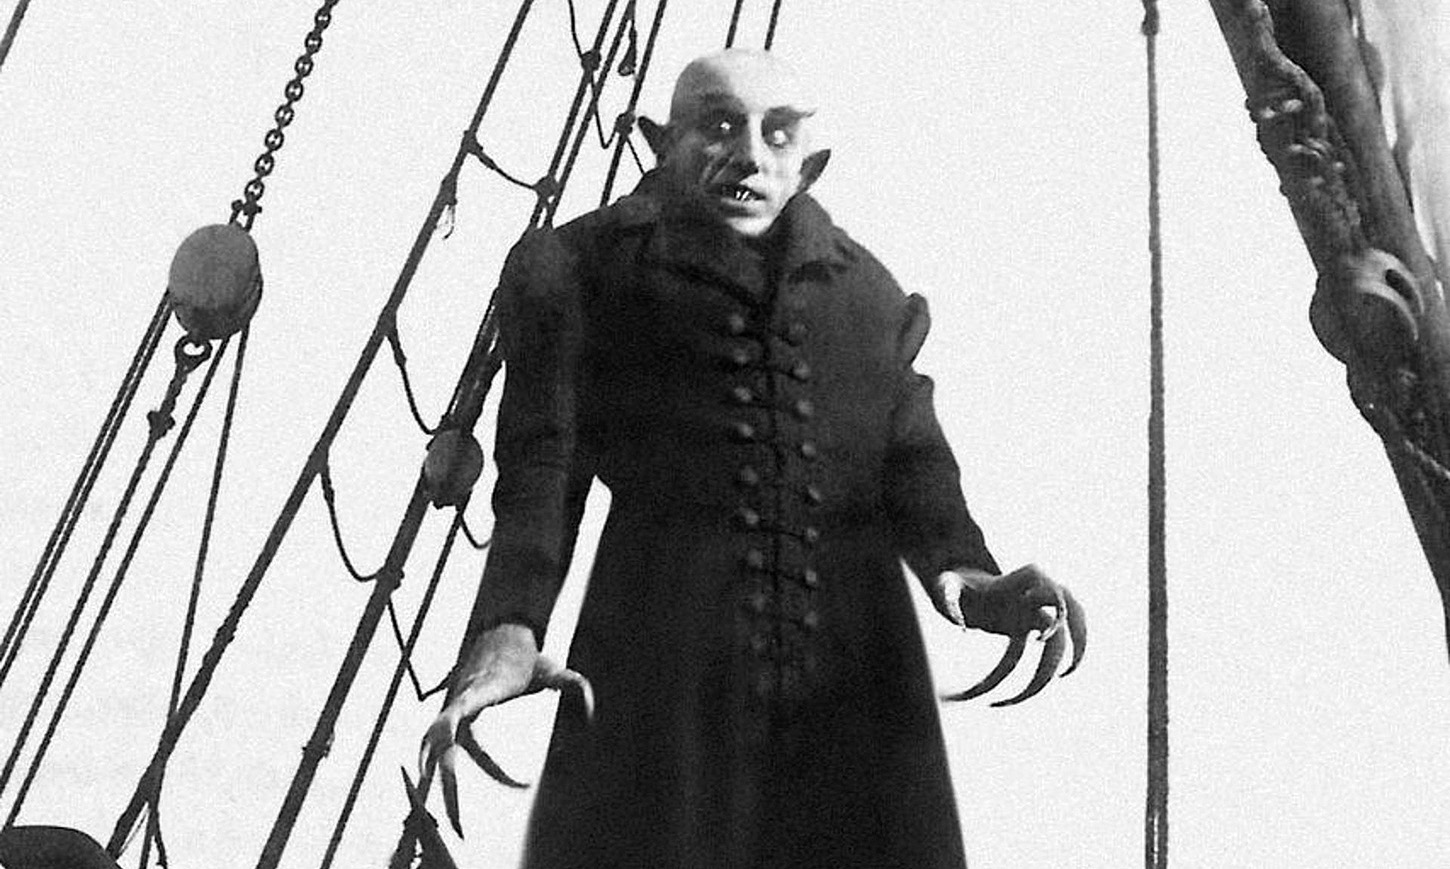 Nosferatu (1922)